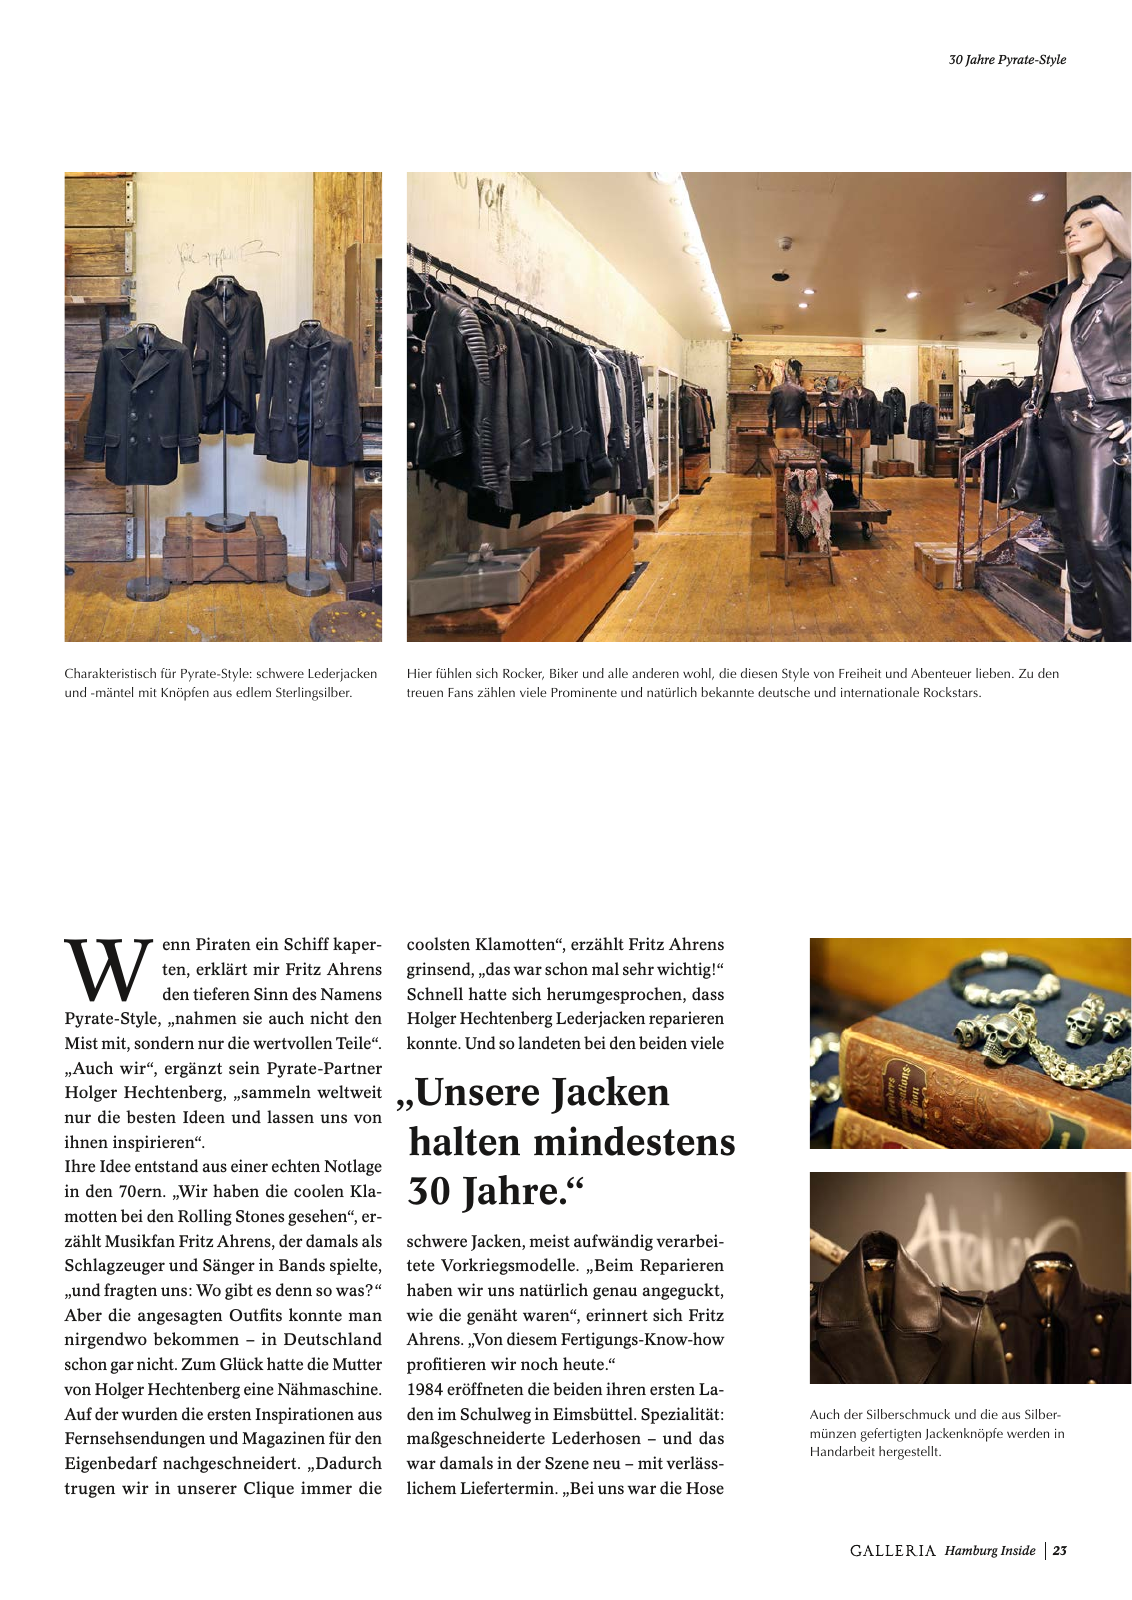 Vorschau GALLERIA Magazin Hamburg Inside 1 Seite 23